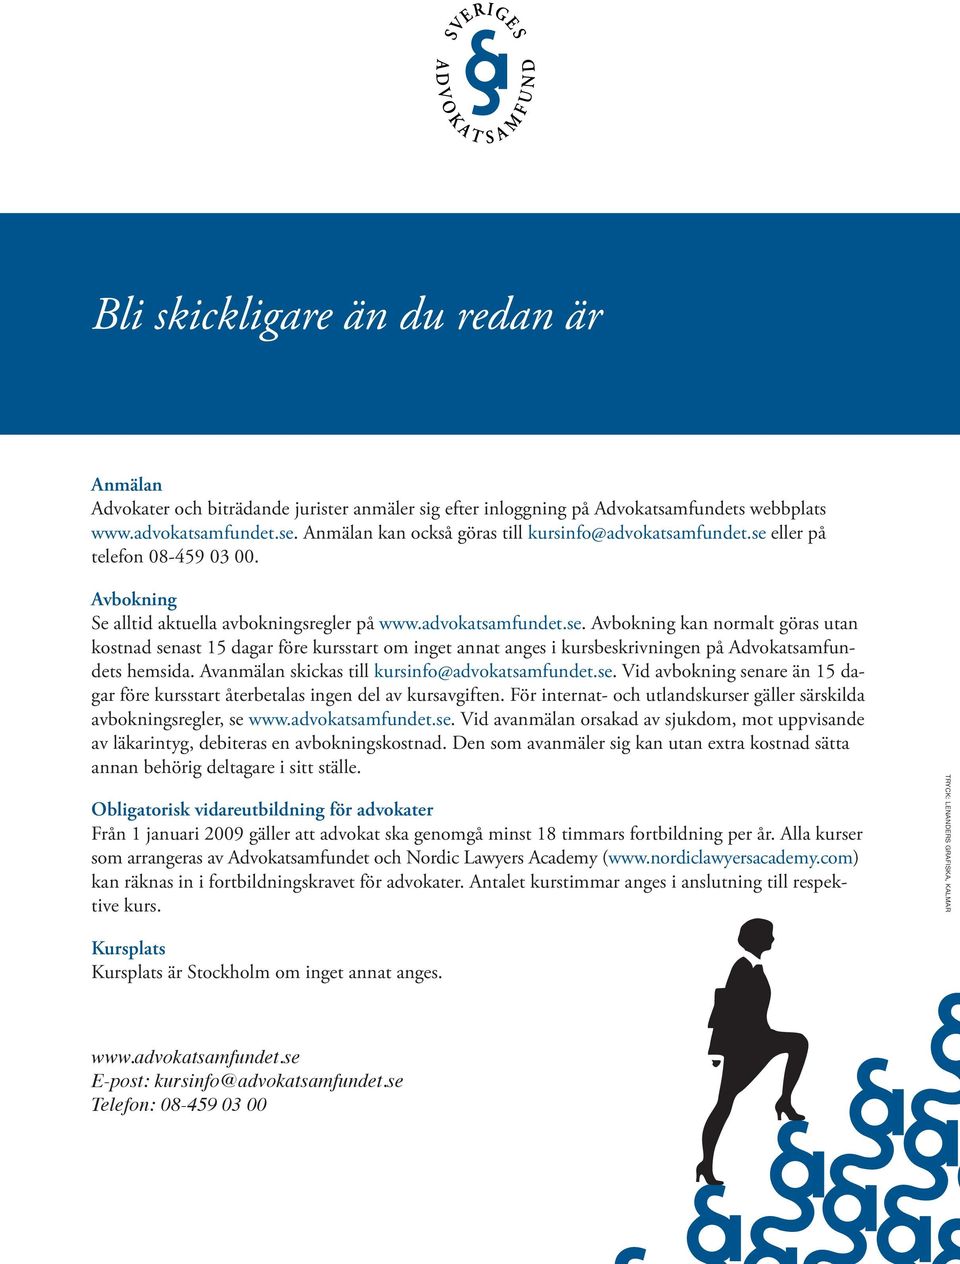 vanmälan skickas till kursinfo@advokatsamfundet.se. Vid avbokning senare än 15 dagar före kursstart återbetalas ingen del av kursavgiften.